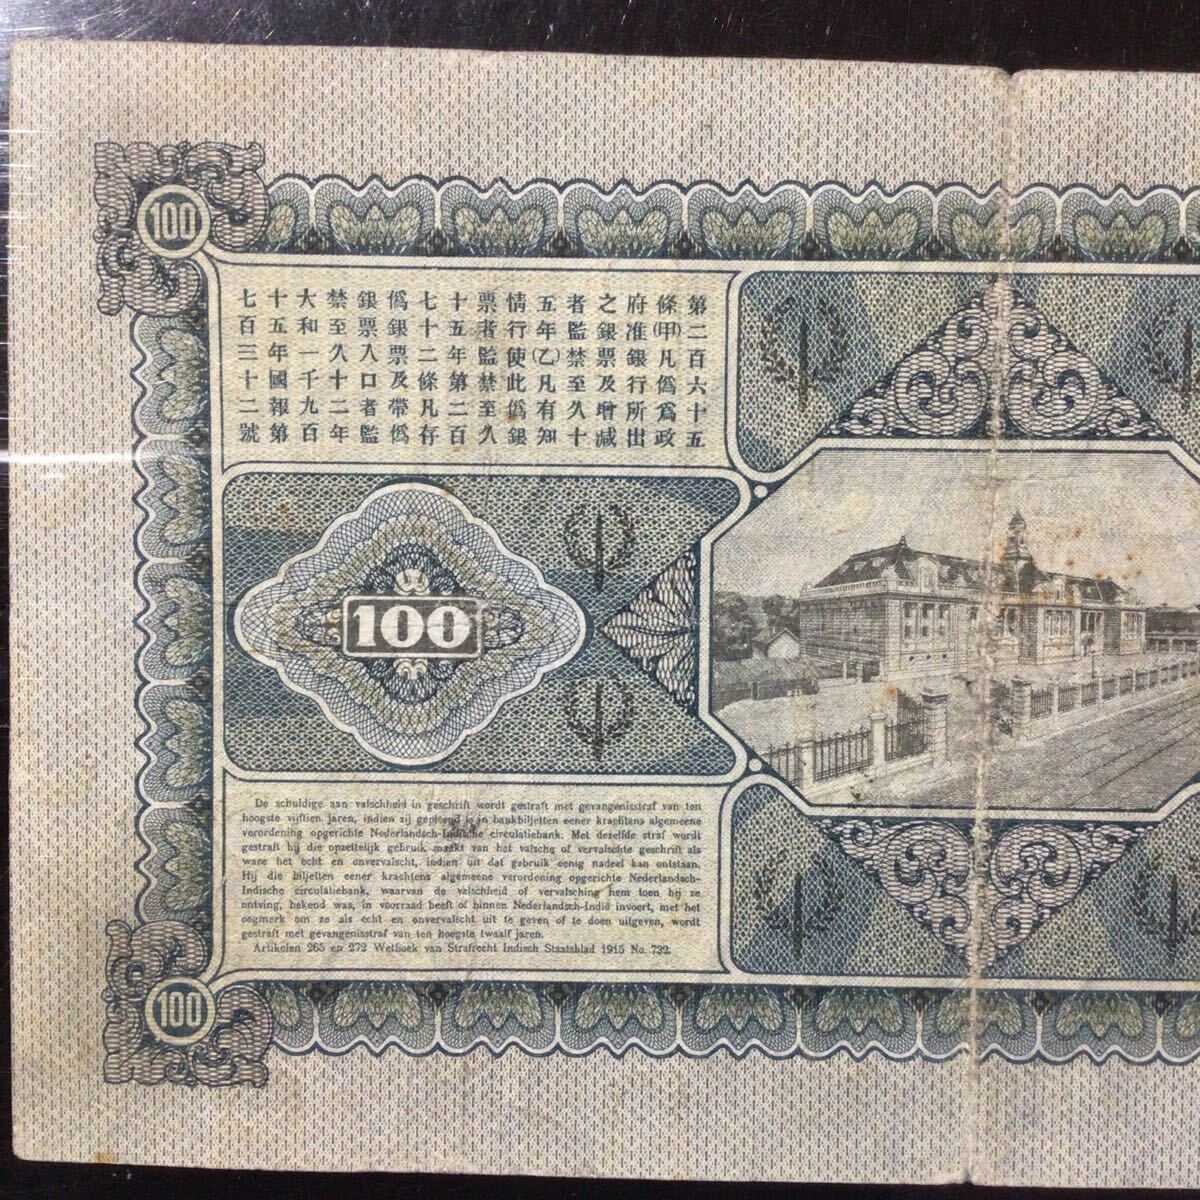 World Banknote Grading NETHERLANDS INDIES《Javasche Bank》 100 Gulden【1927】『PMG Grading Very Fine 30』_画像6